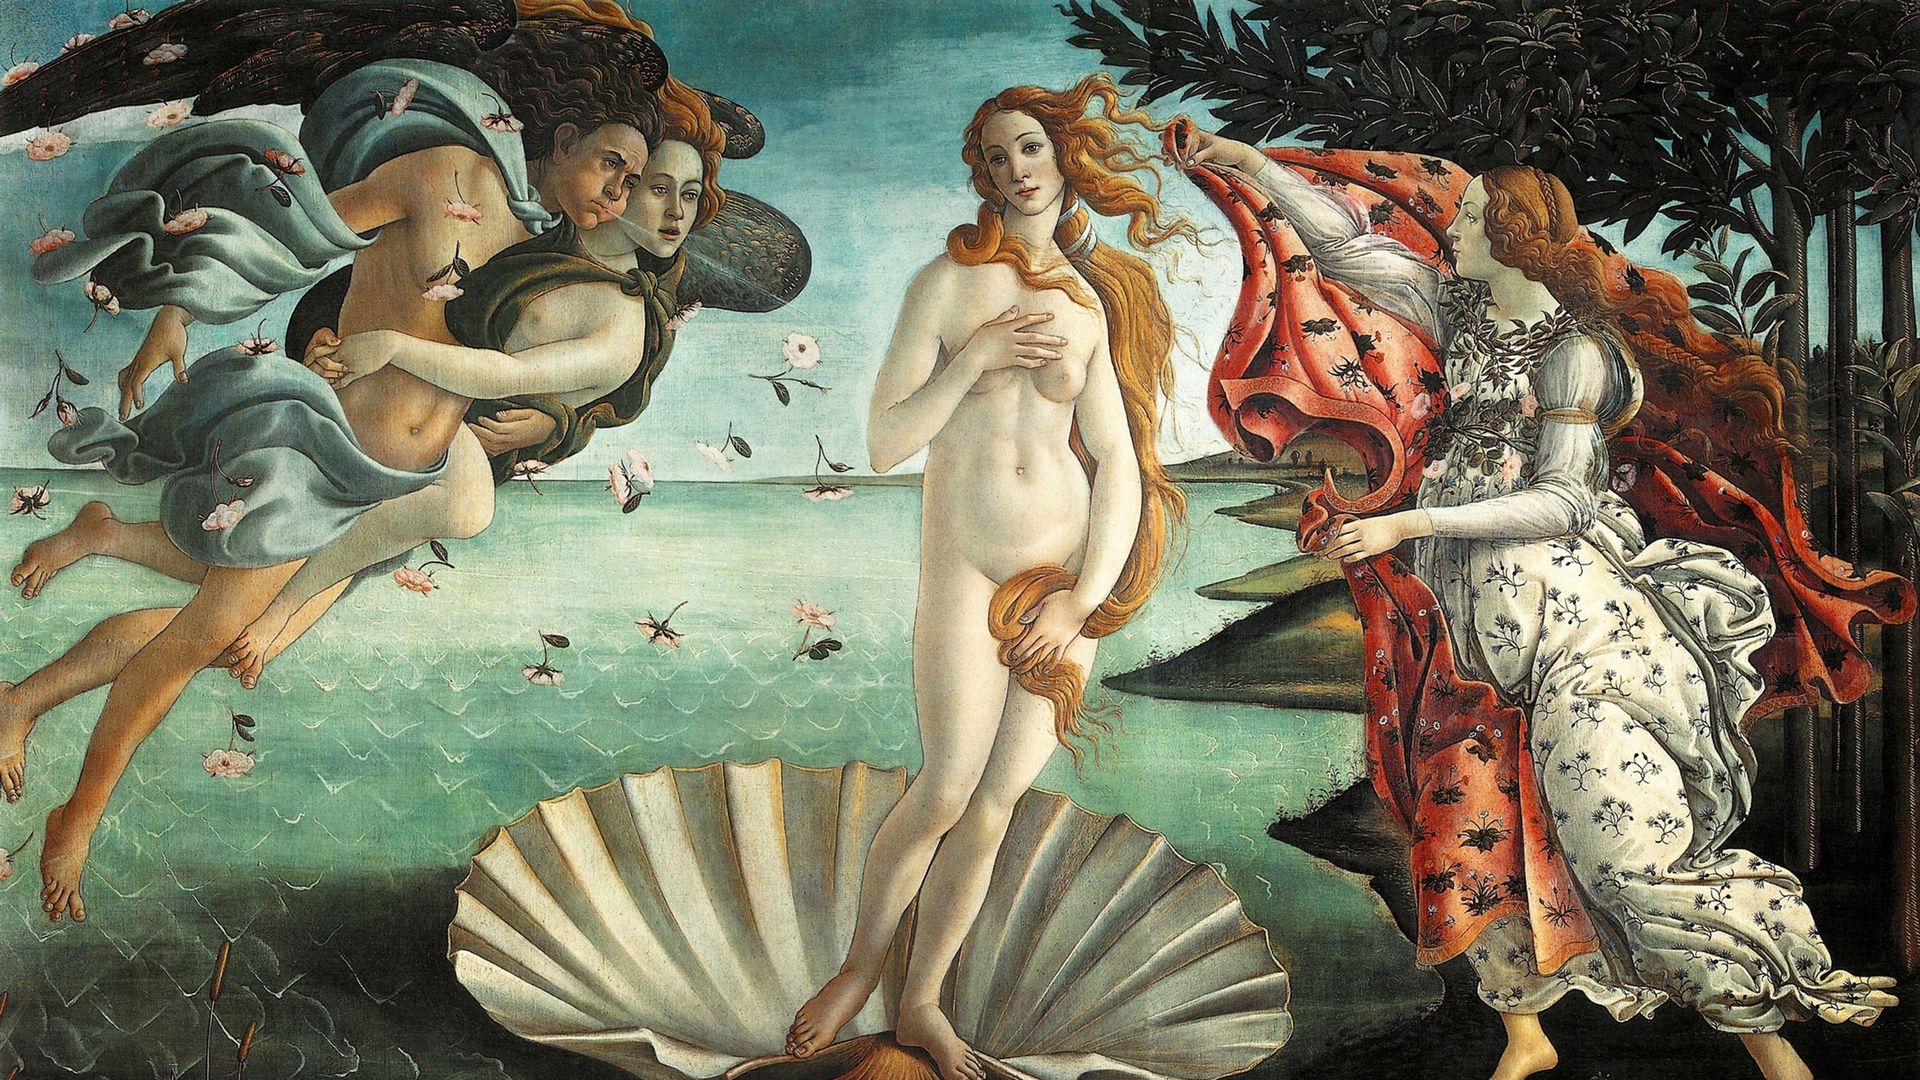 "La Naissance de Vénus", peinture du peintre italien de la Renaissance Sandro Botticelli c. 1445 - 1510. Il représente la déesse Vénus, ayant émergé de la mer en tant que femme adulte, arrivant au bord de la mer.